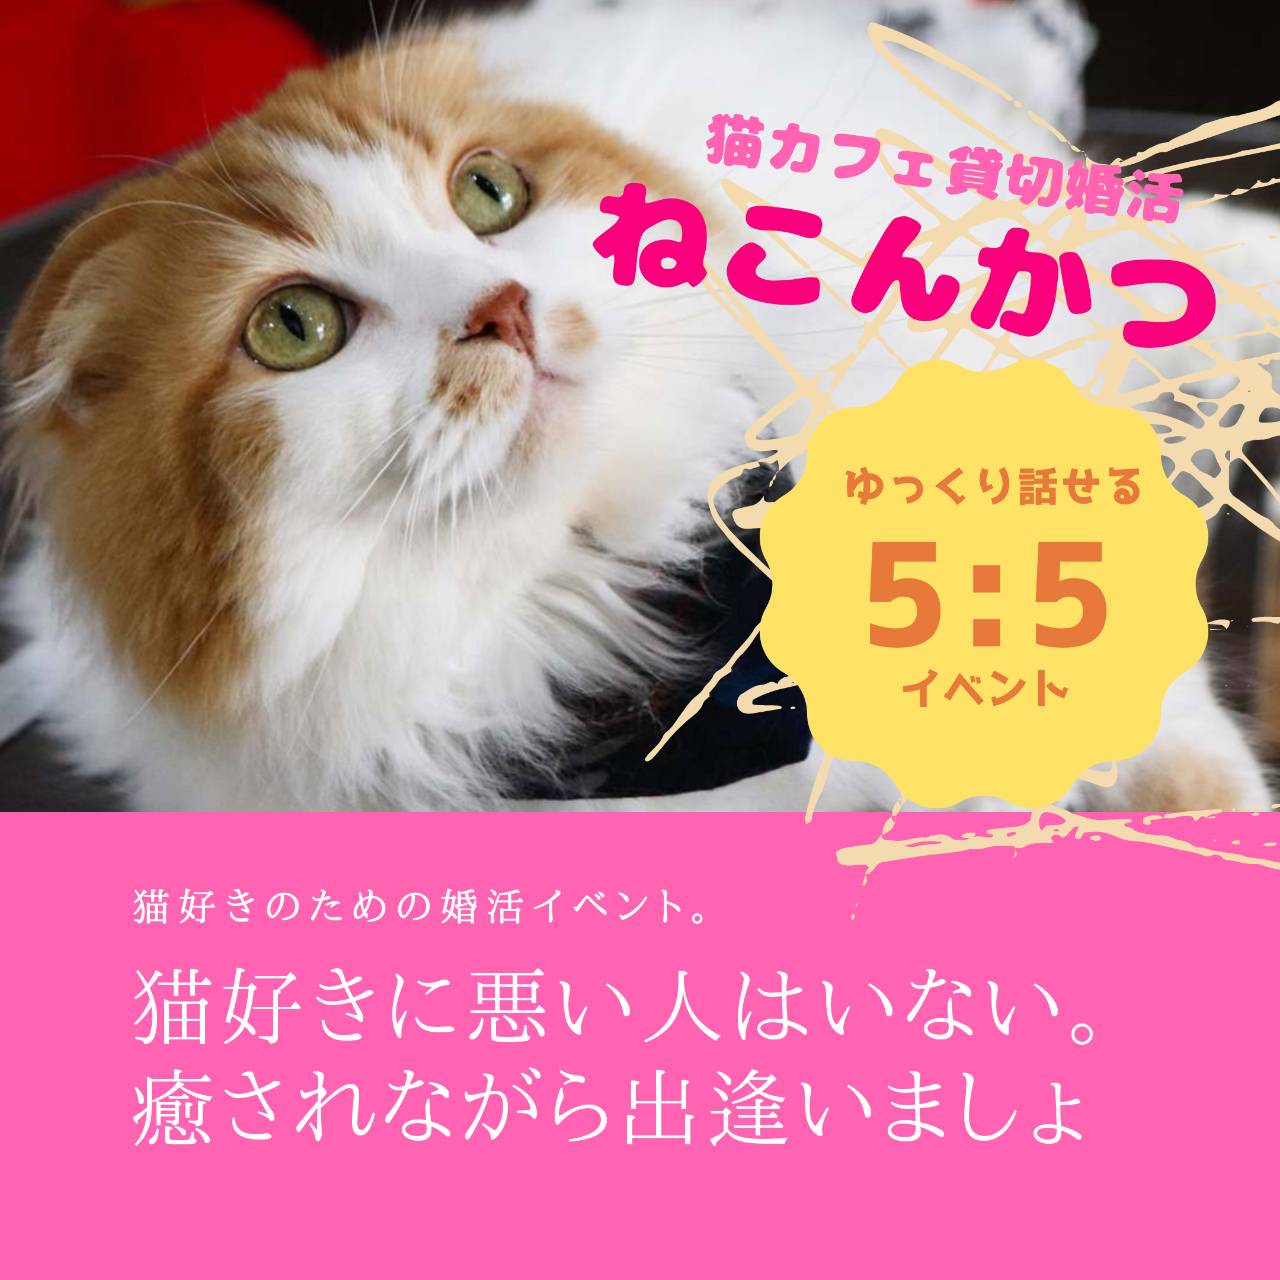 6 26 金 猫カフェ貸切婚活 ねこんかつ Marriagesalonプリムラ 姫路市 加古川市で婚活なら月4400円から始められるプリムラへ